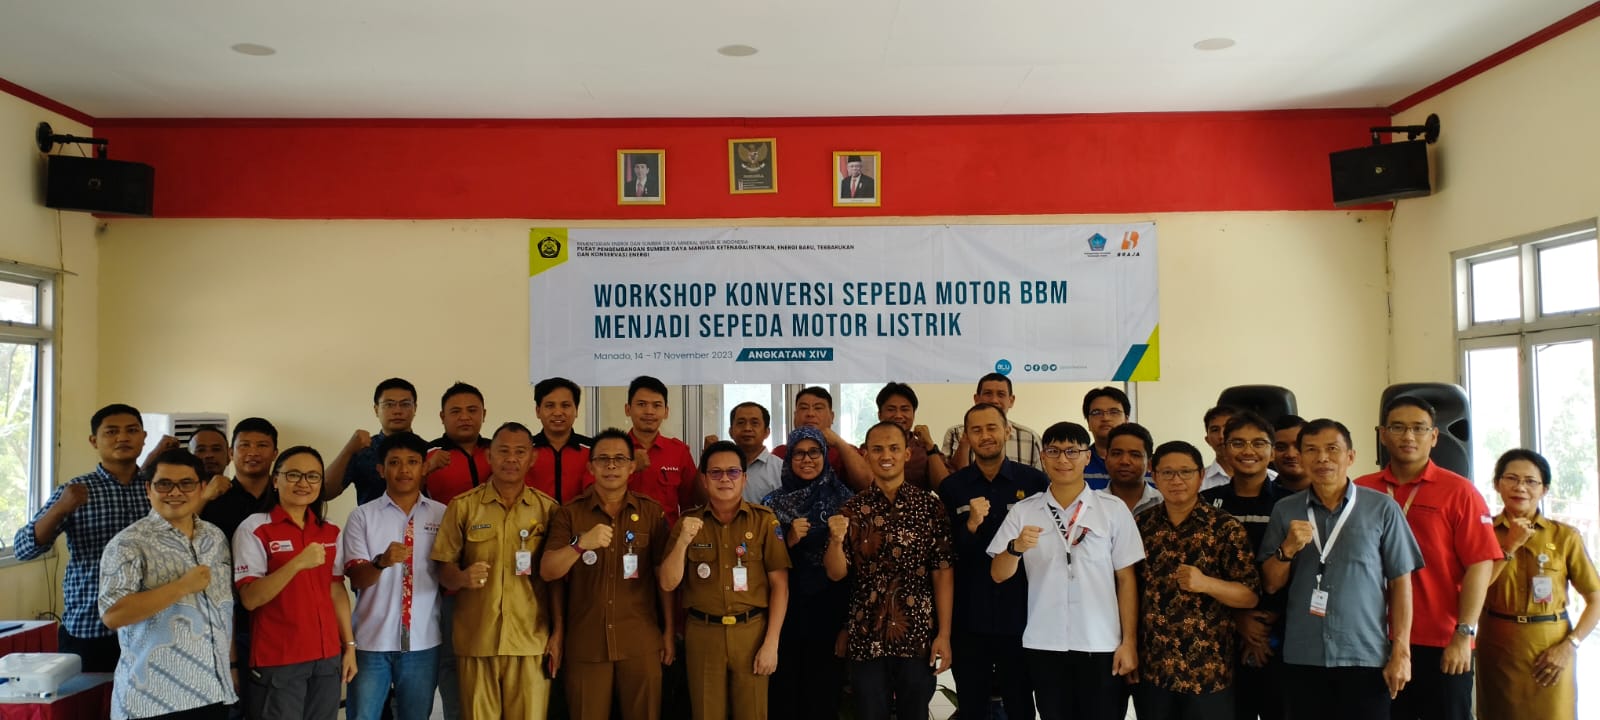 Workshop Konversi Sepeda Motor BBM Menjadi Sepeda Motor Listrik di SMK Negeri 2 Manado